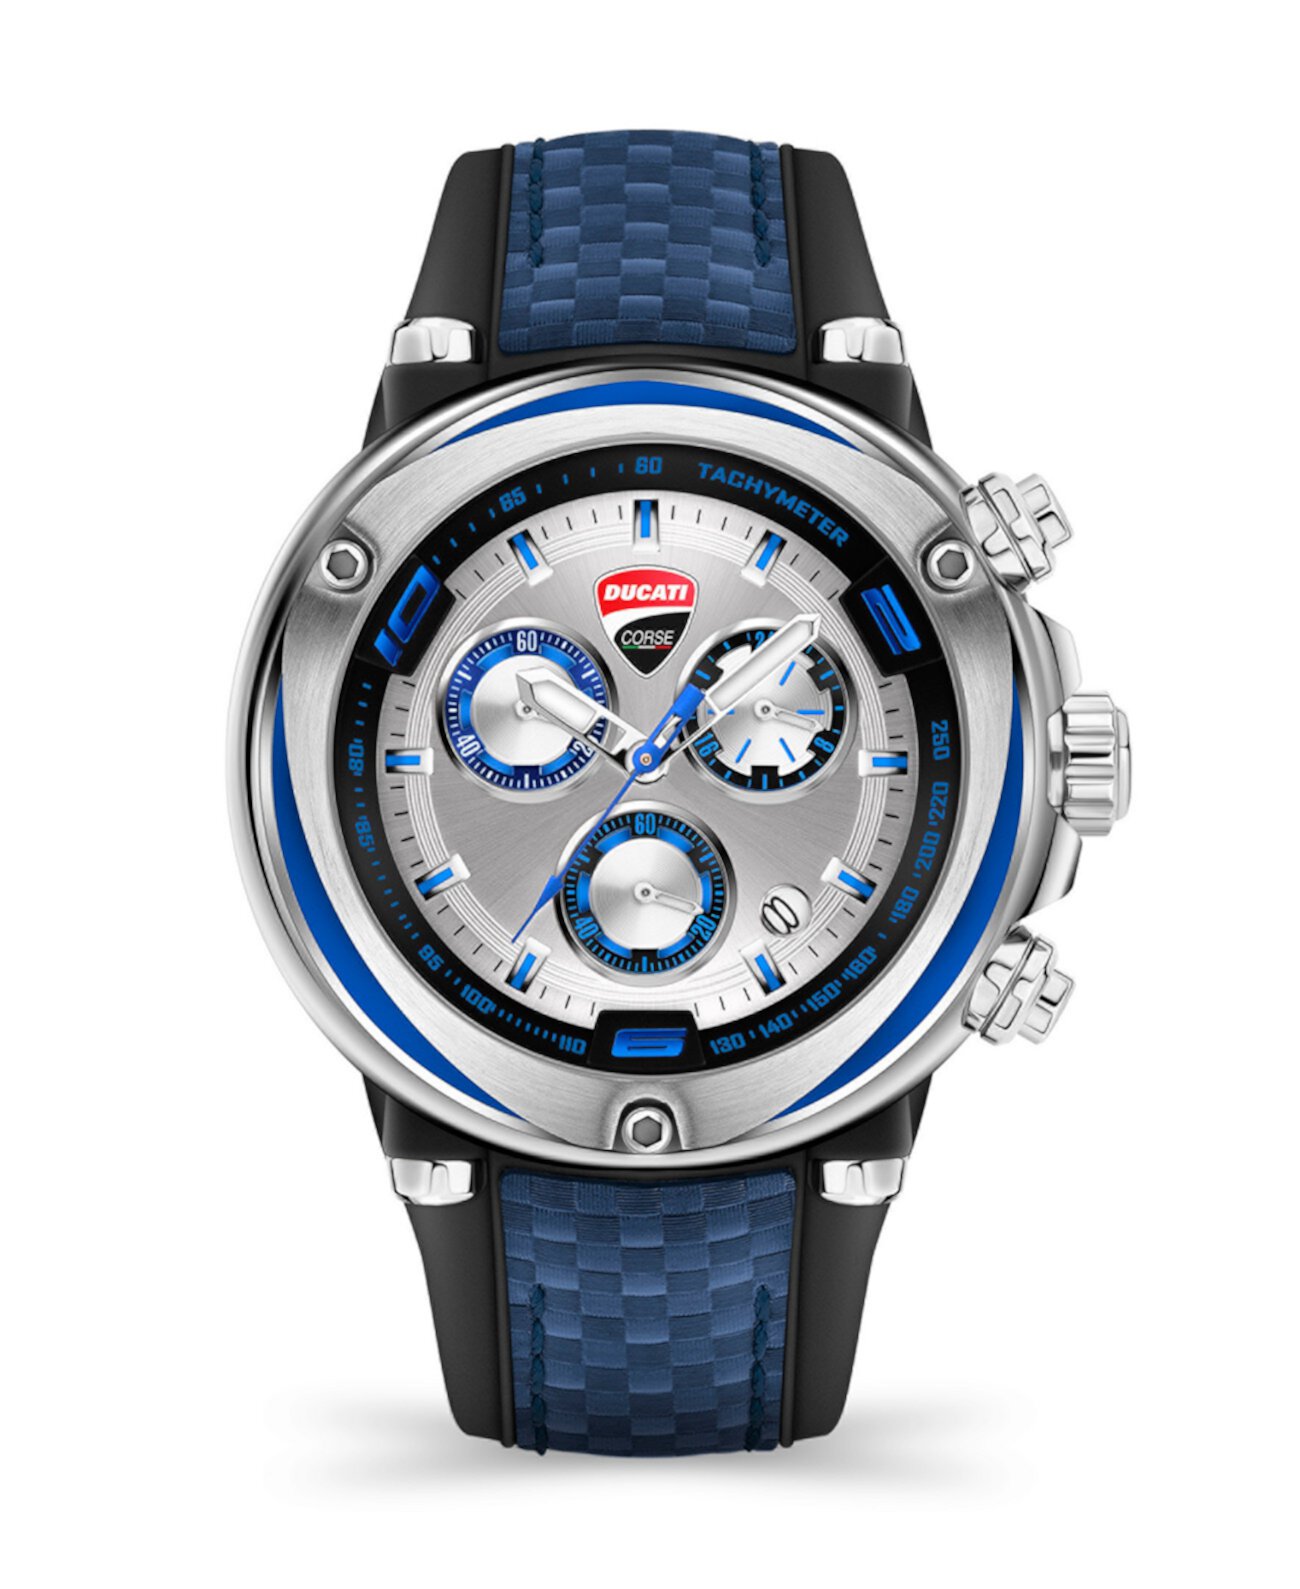 Мужские часы Partenza Timepiece с черным силиконовым ремешком, 49 мм Ducati Corse